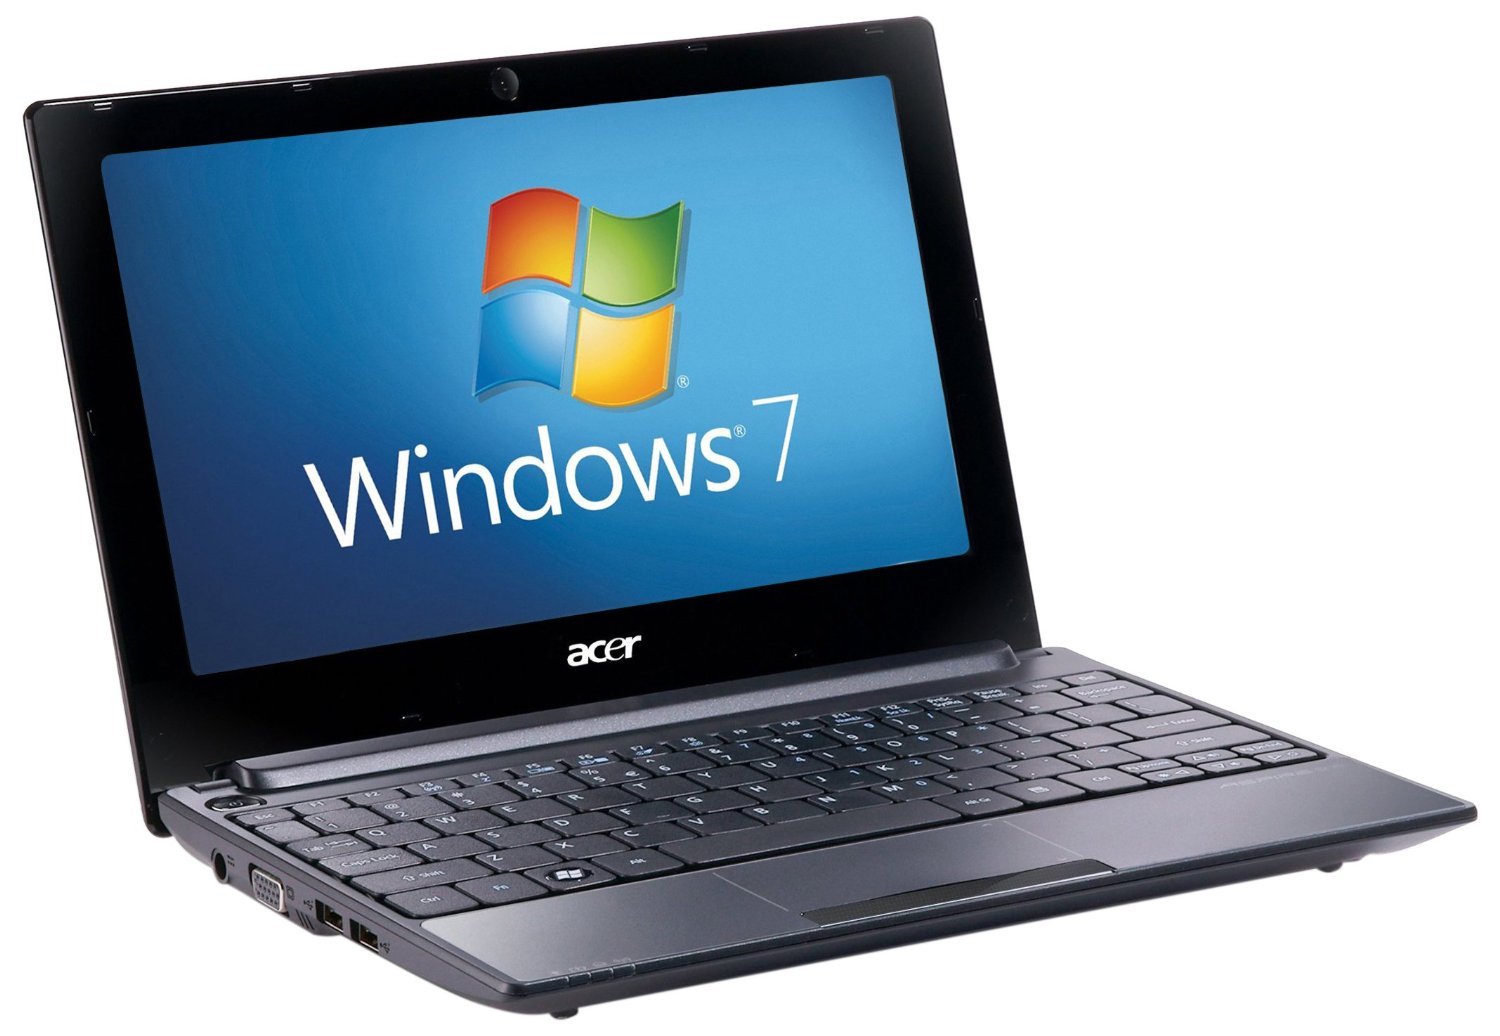 Acer Aspire One 522 10.1 inch Netbook Ram 1GB, 320GB HDD, Windows 7